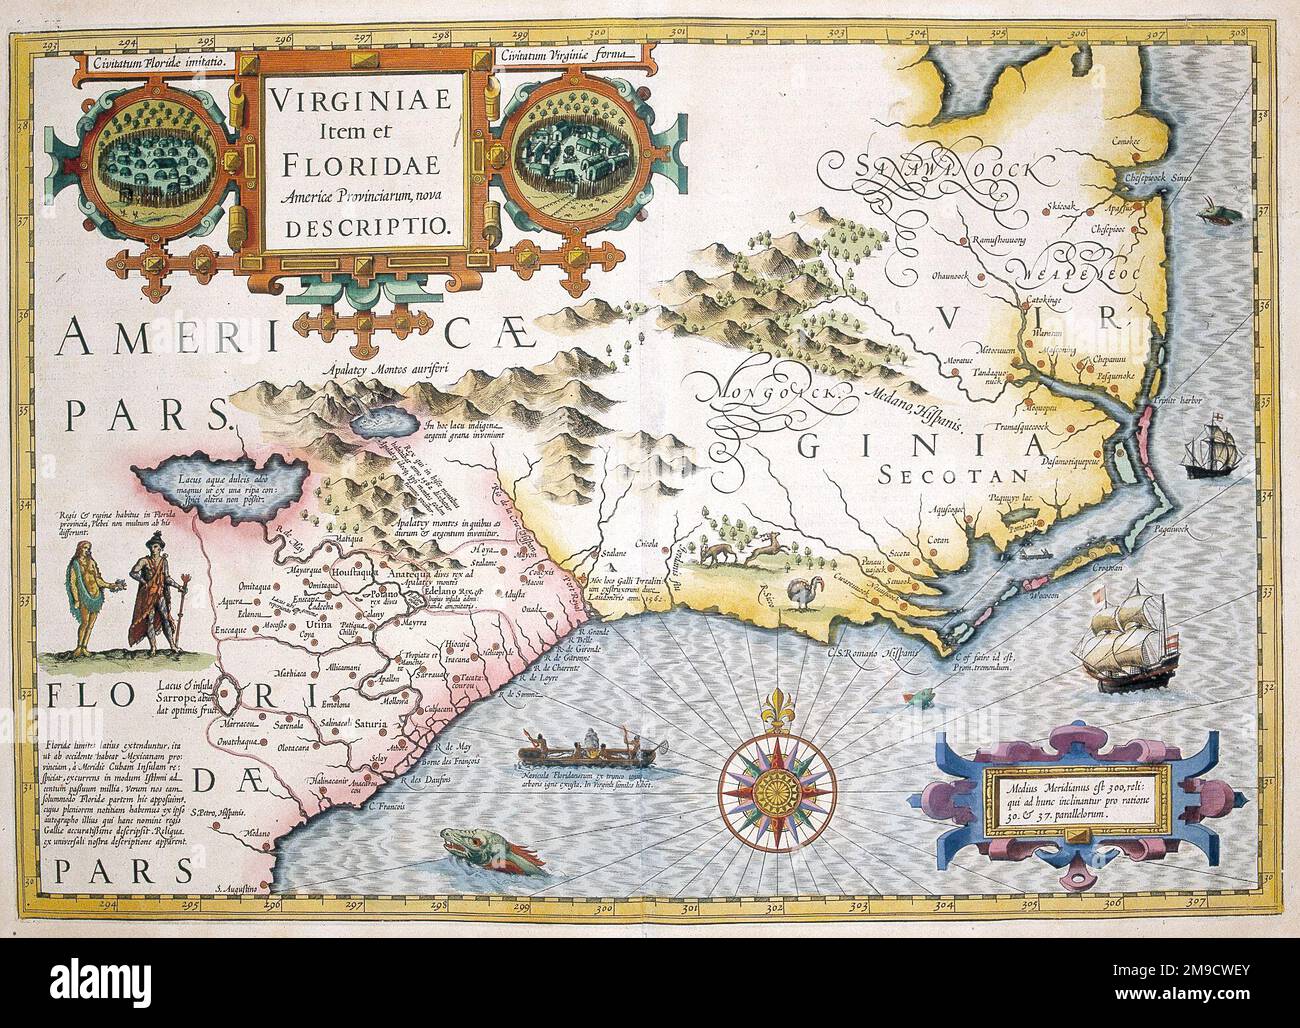 Mappa del 17th° secolo della Virginia e della Florida, America con insediamenti indiani americani - Virginae item et Flordiae Foto Stock